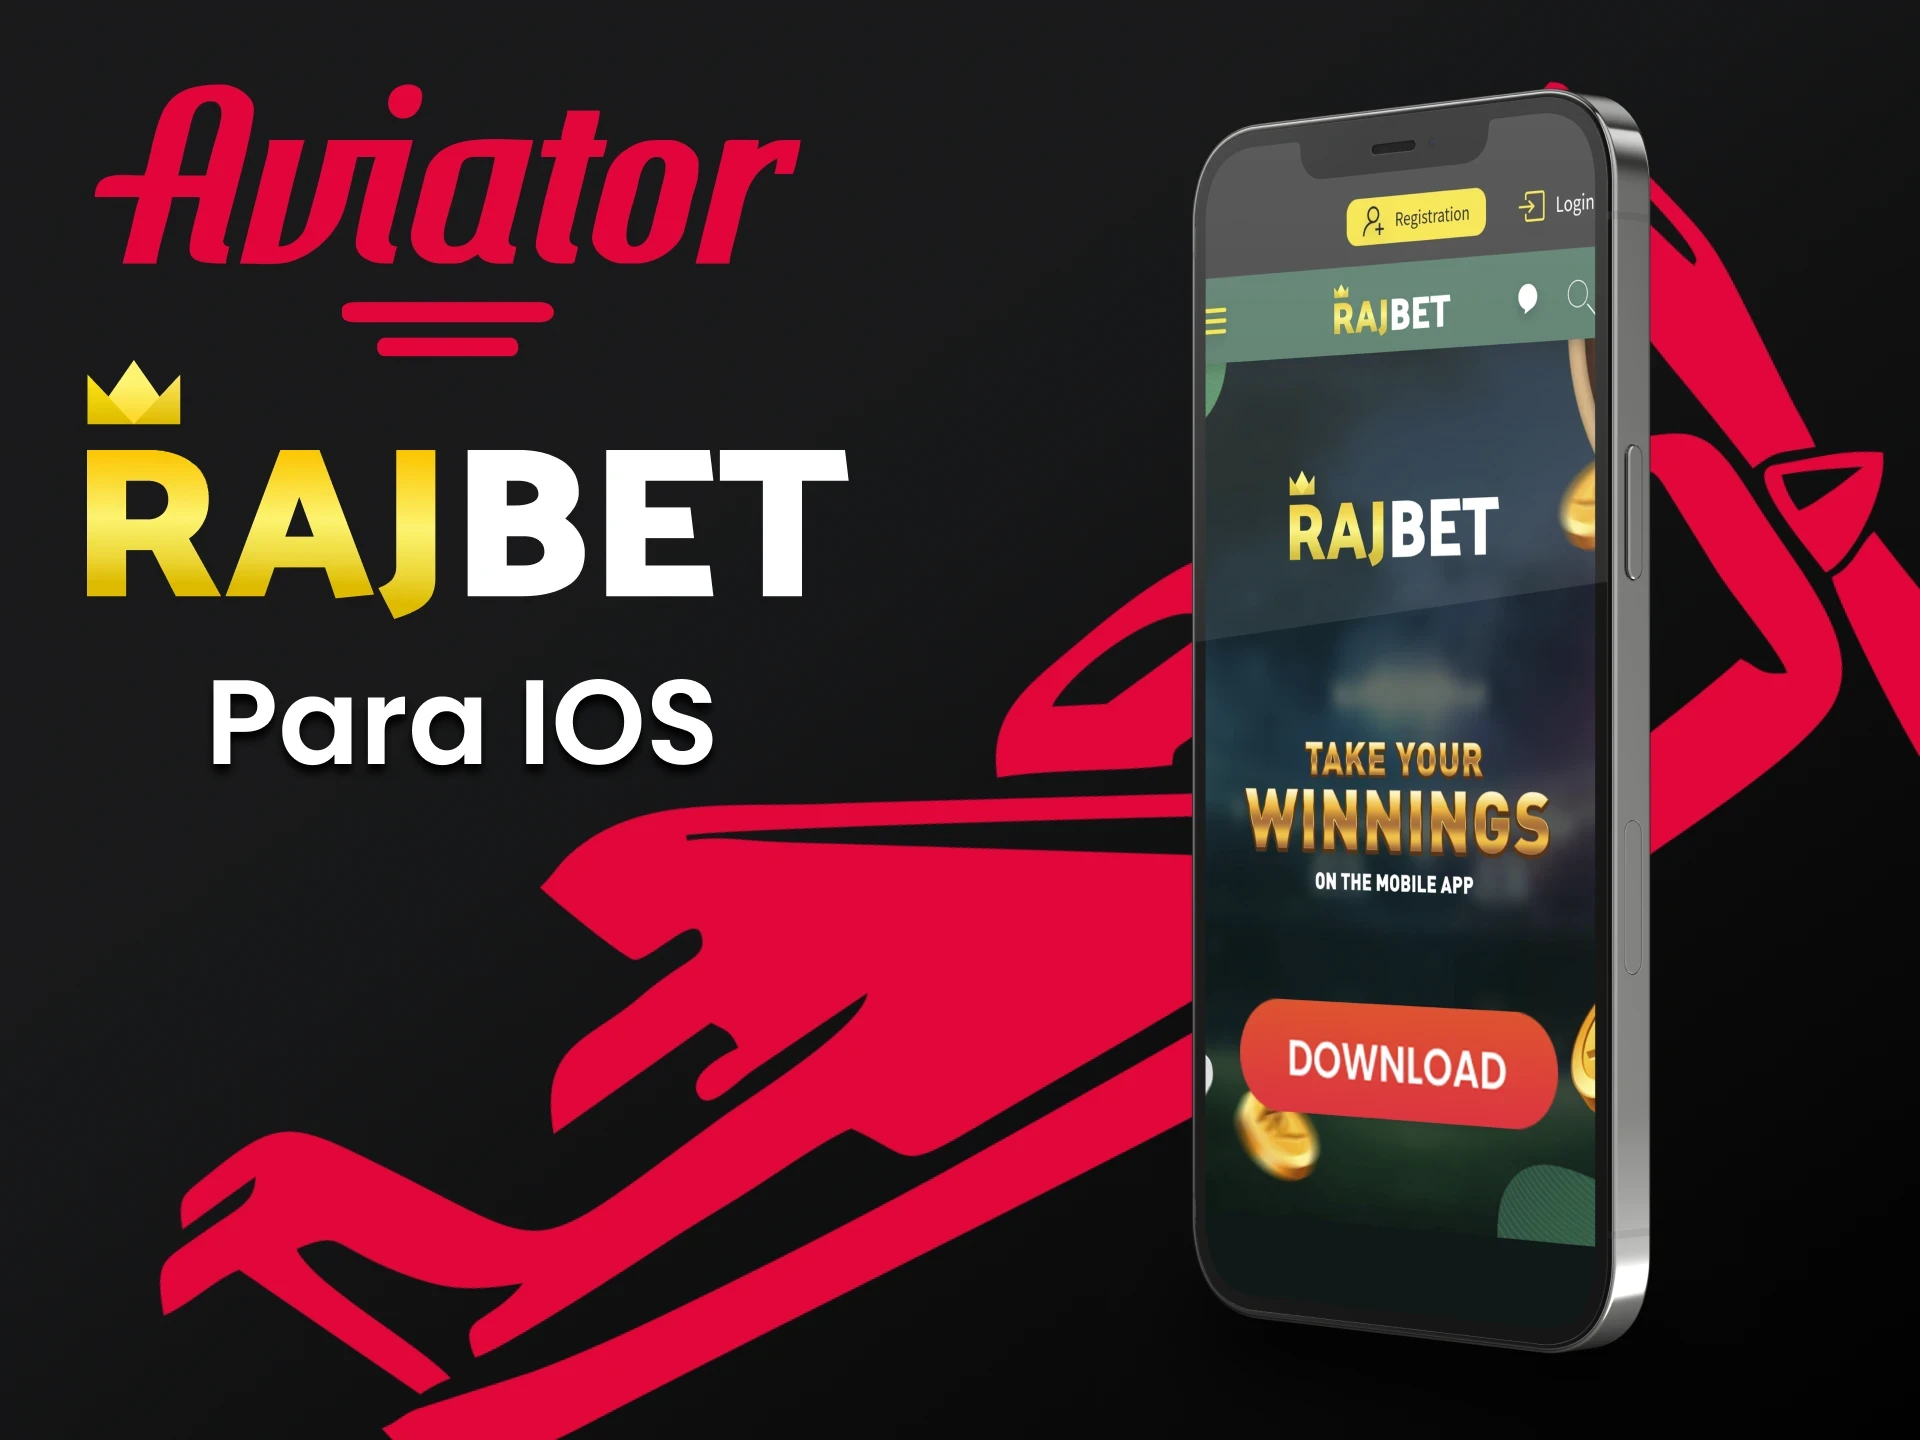 Baixe o aplicativo Rajbet para iOS para Aviator.